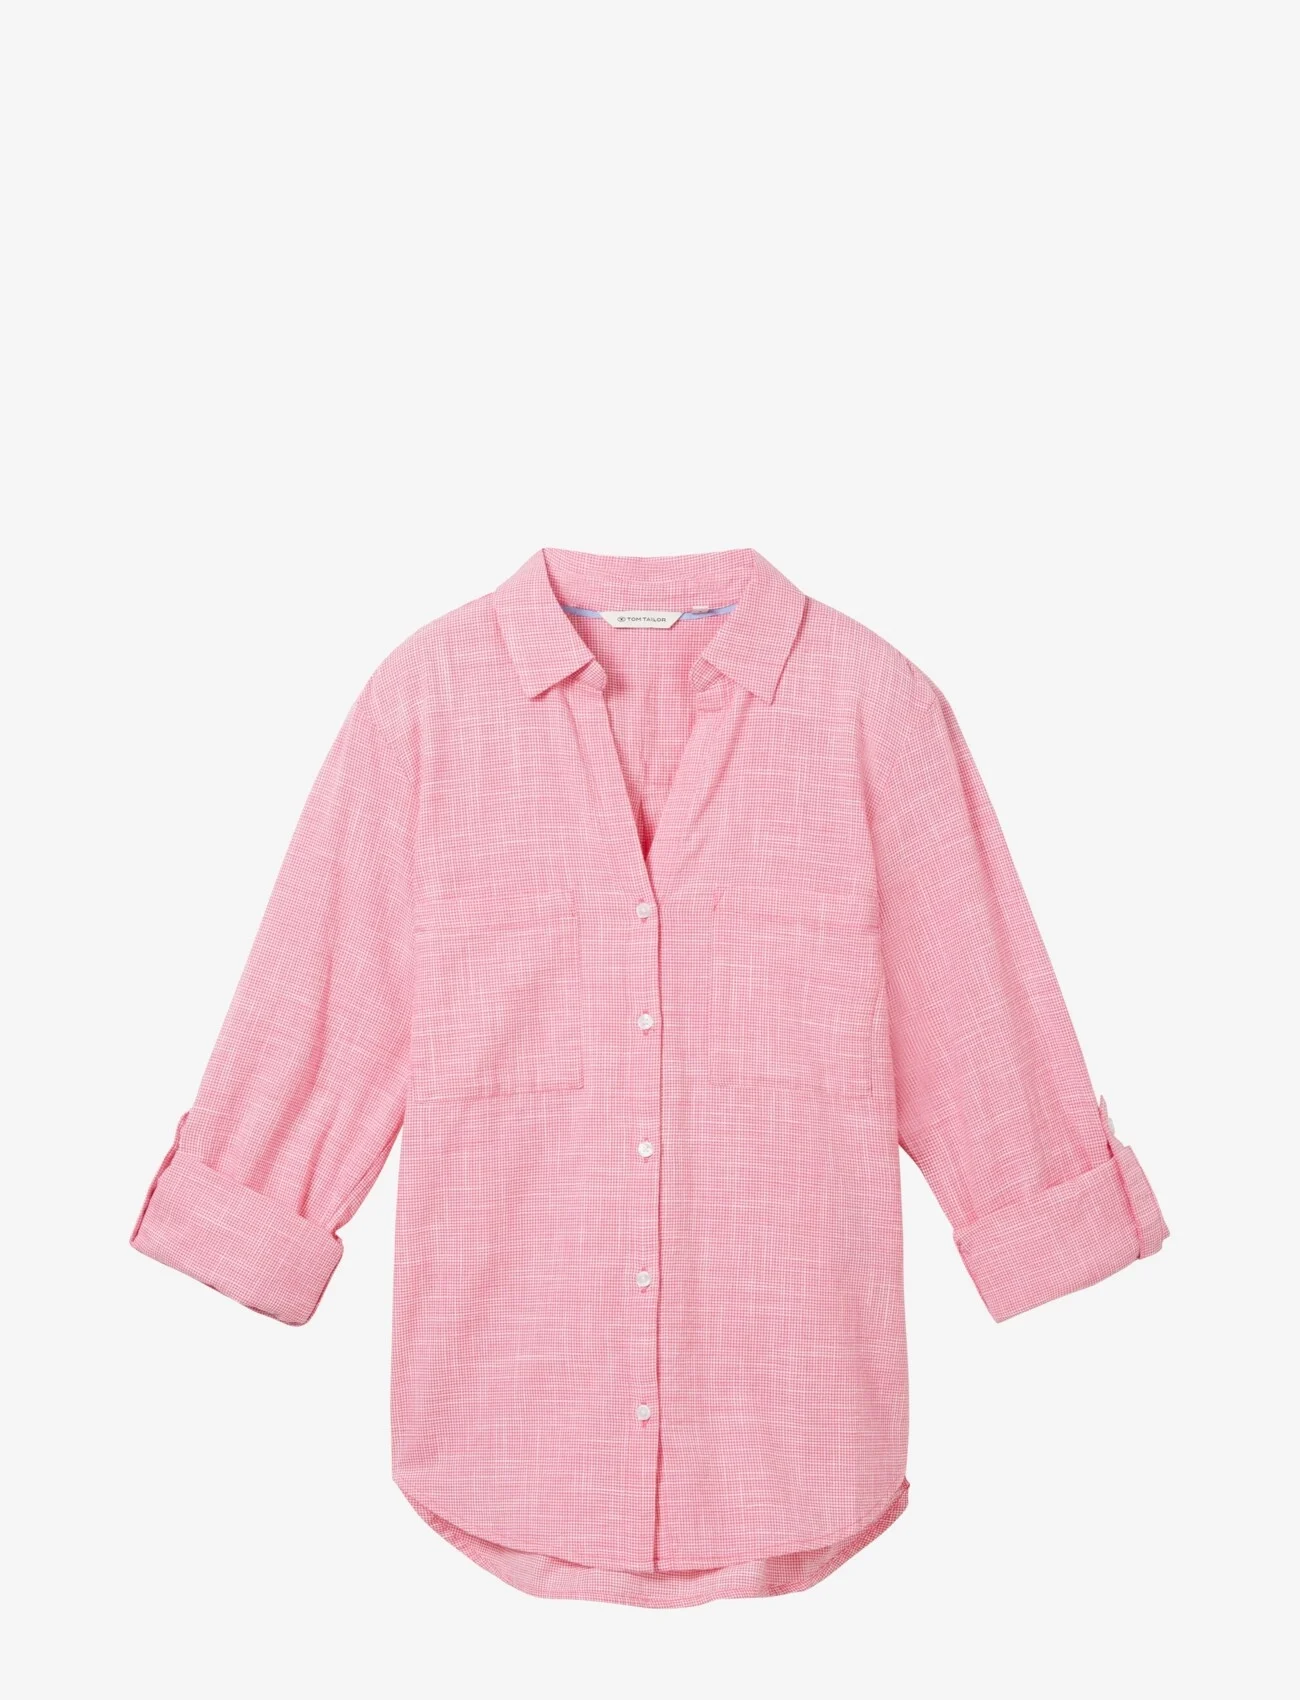 Tom Tailor - blouse with slub structure - marškiniai ilgomis rankovėmis - carmine pink - 0